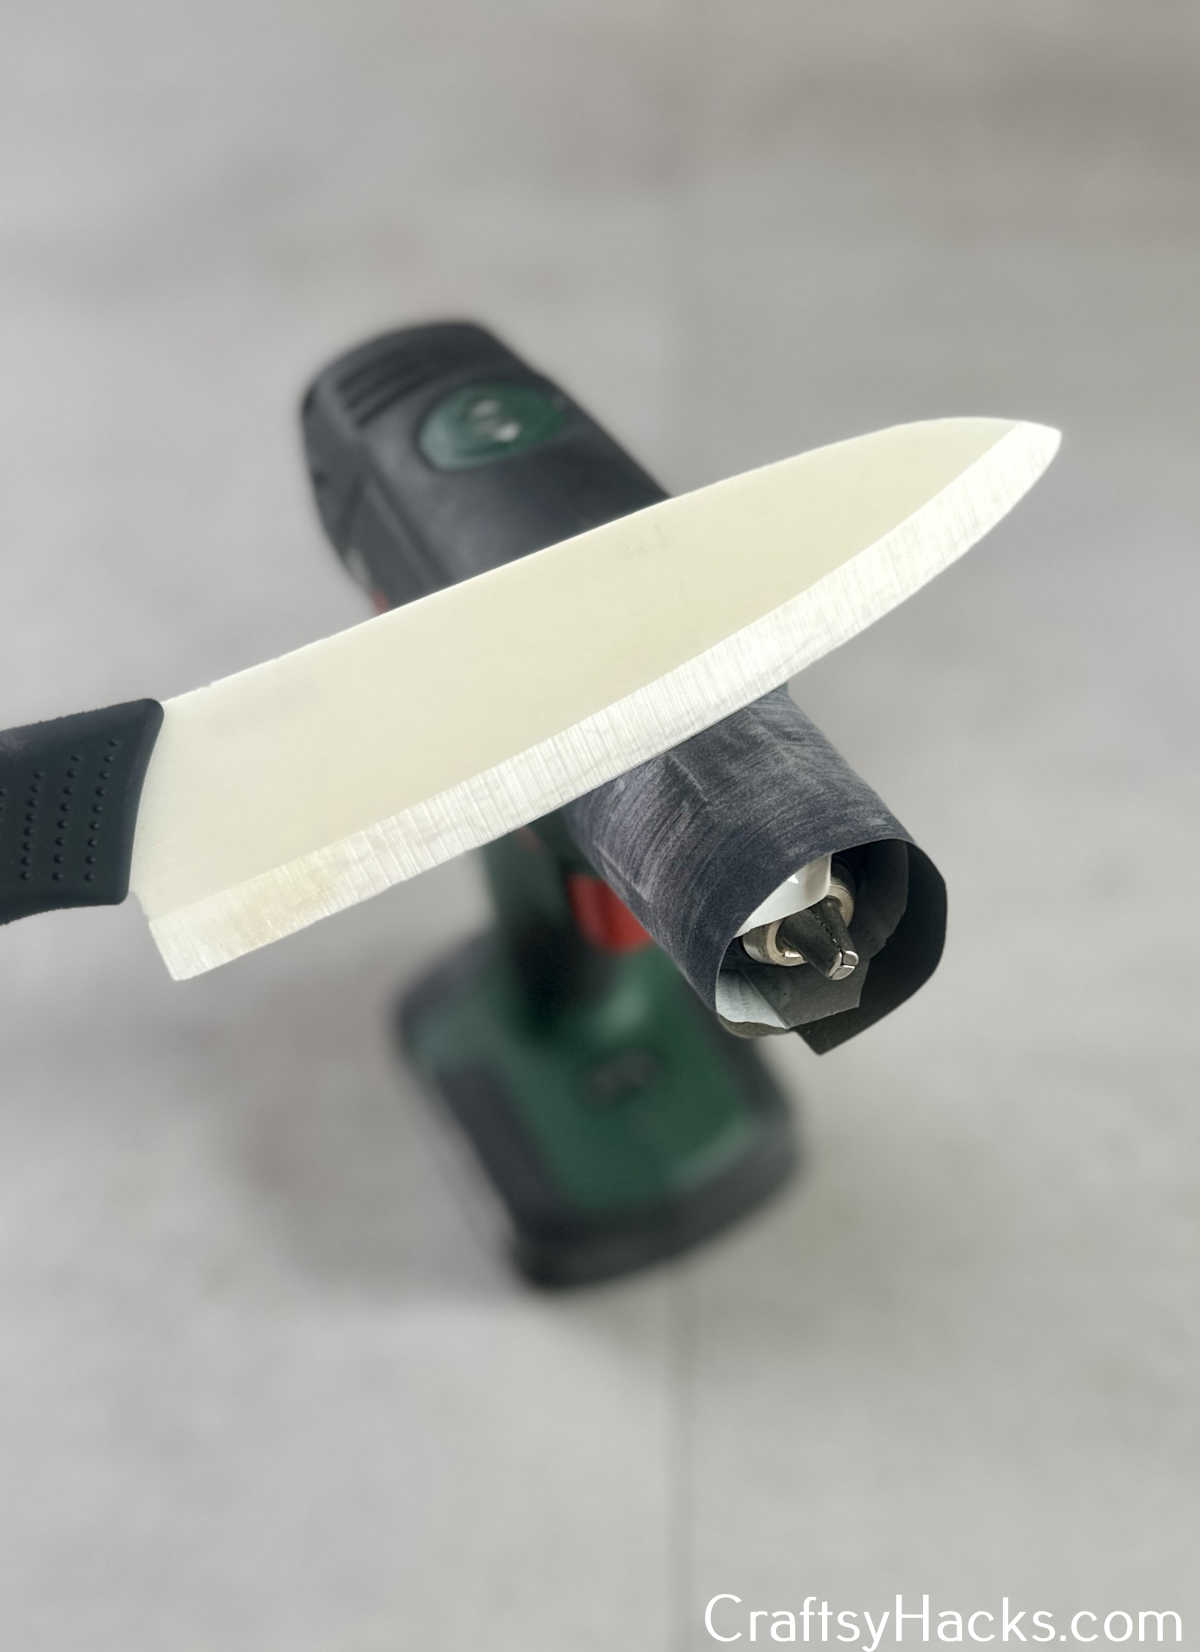 stick sandpaper around drill to sharpen knife